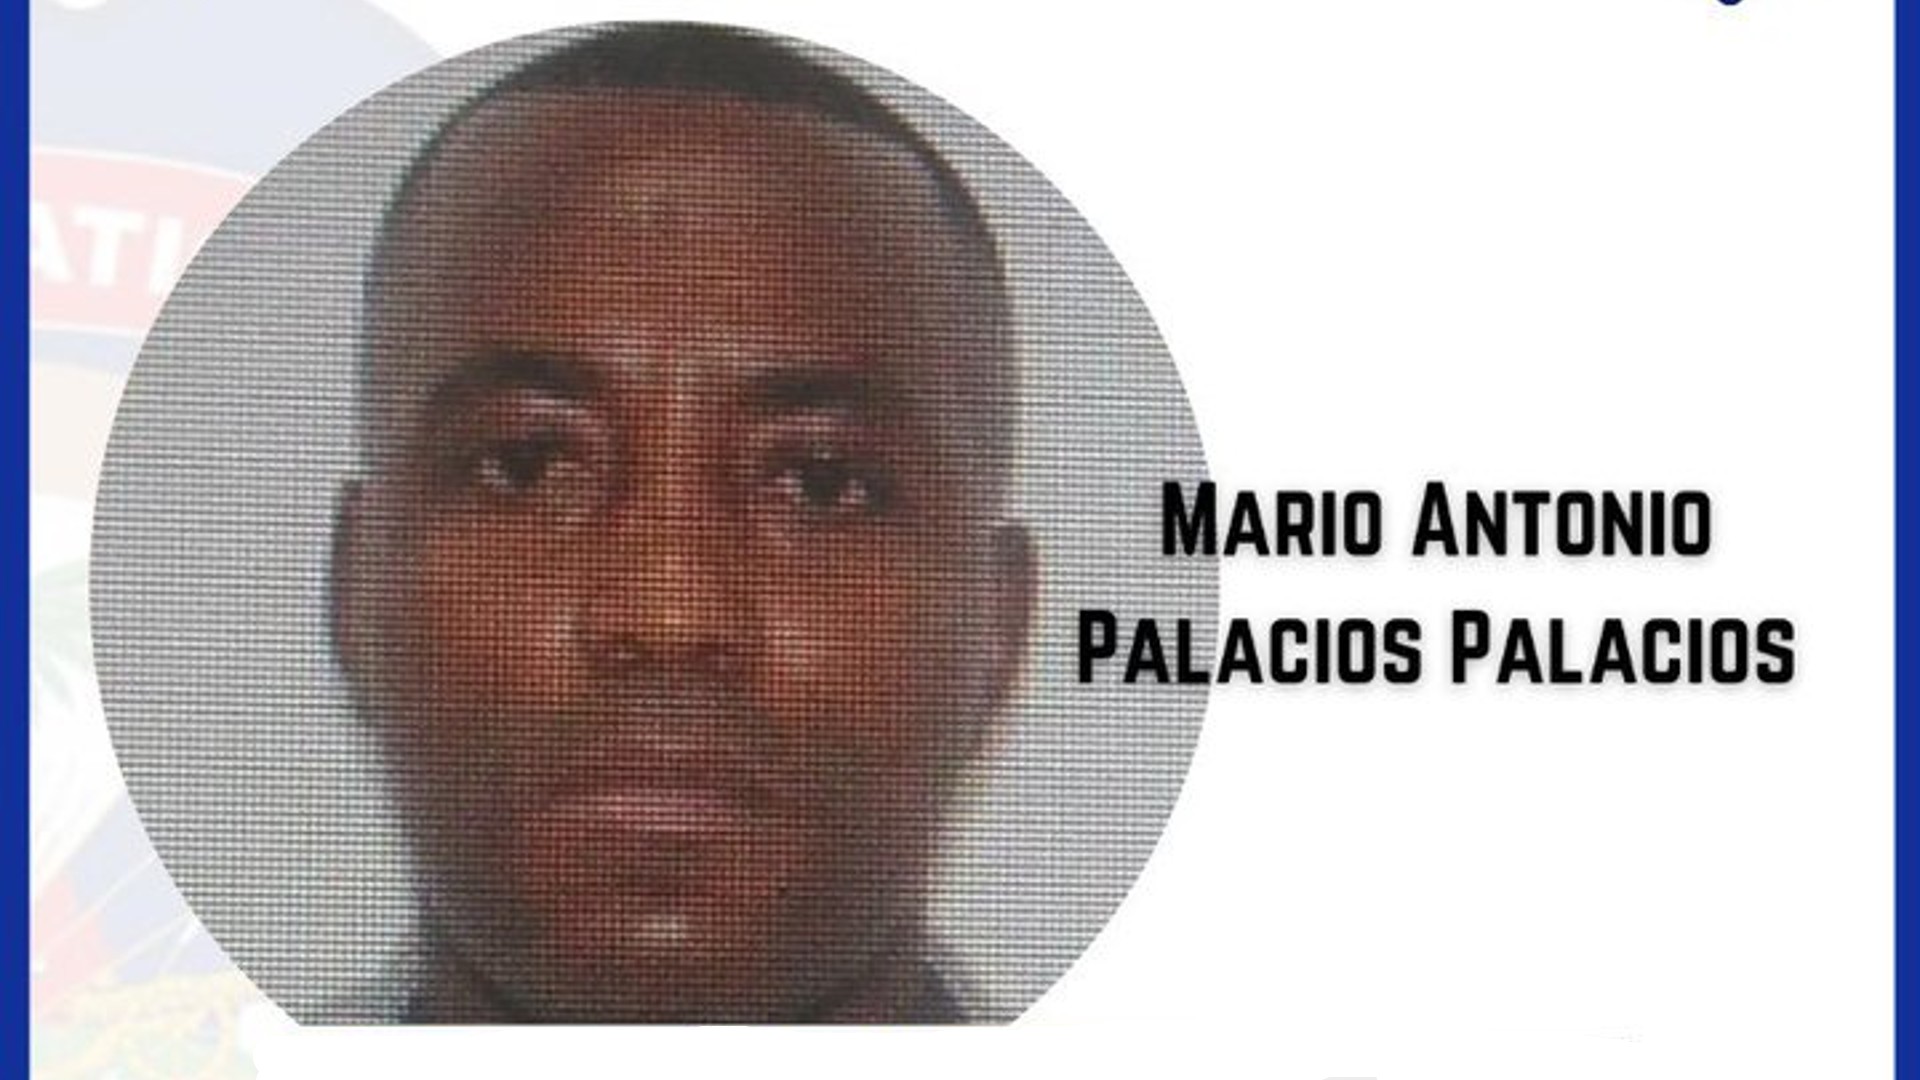 Mario Antonio Palacios Palacios, ex militar colombiano investigado por el magnicidio del presidente de Haití Jovenel Moïse